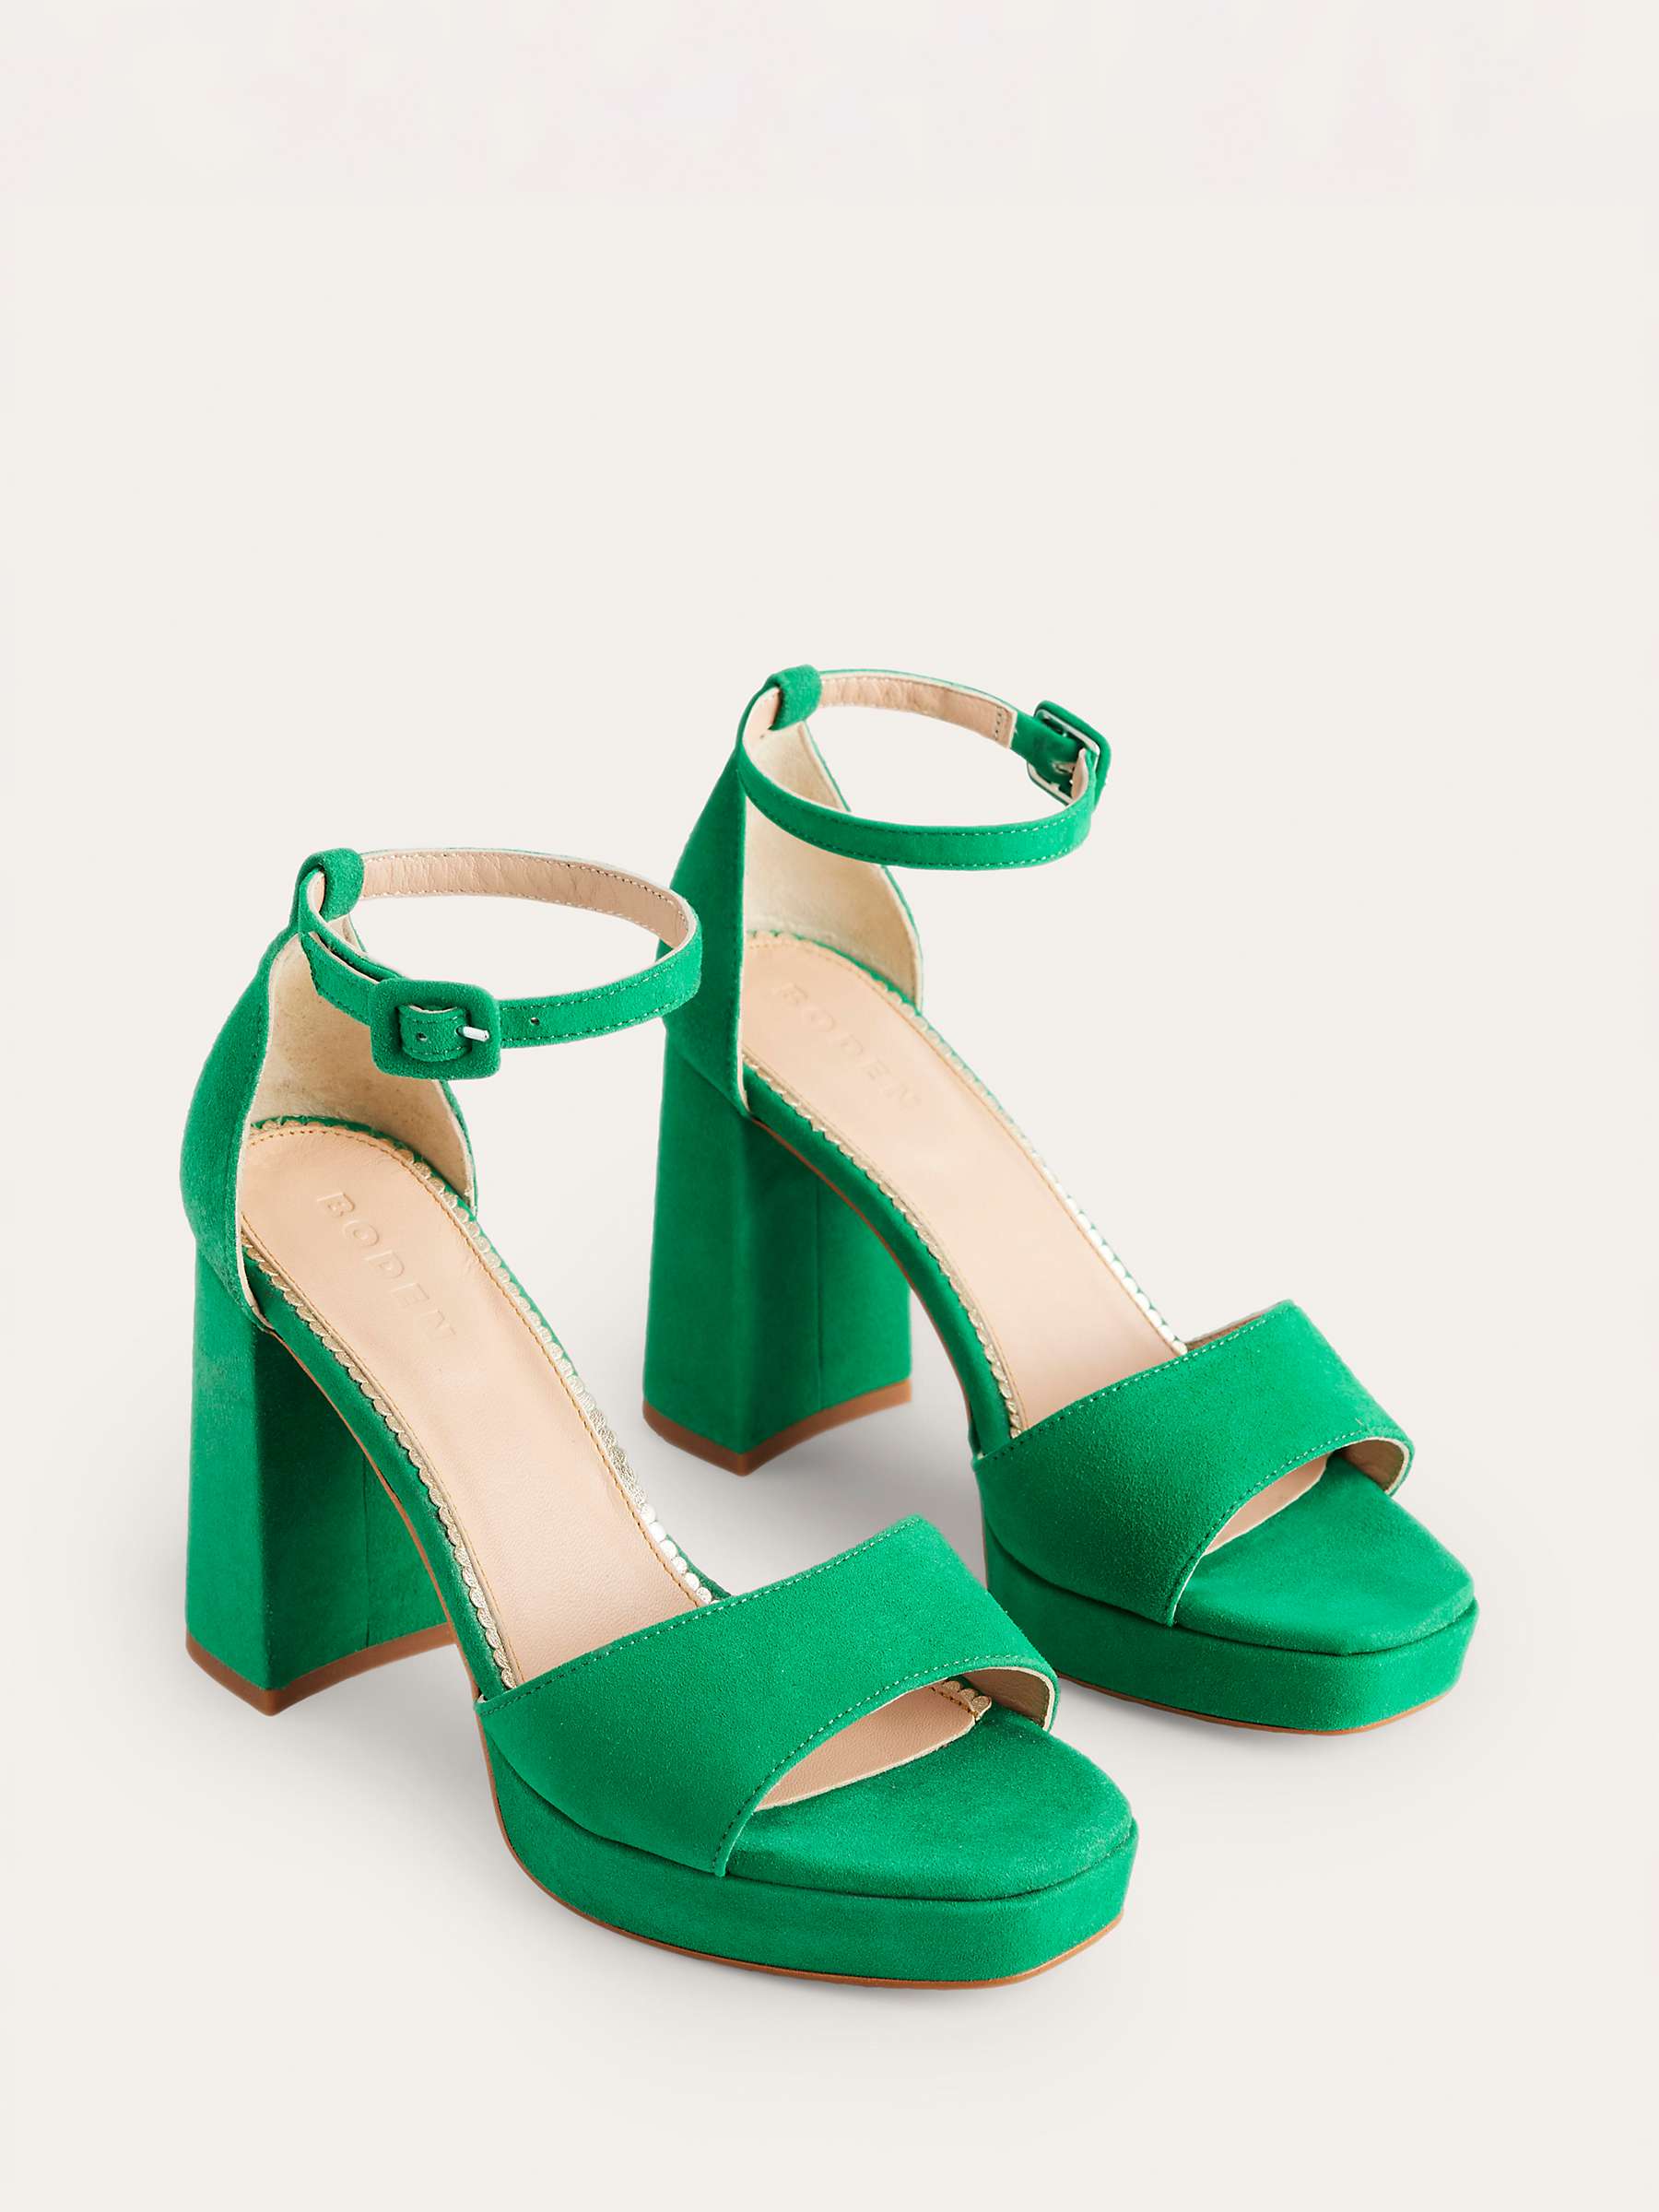 Buy Boden Suede Block Heel Platform Sandals, Green Online at johnlewis.com